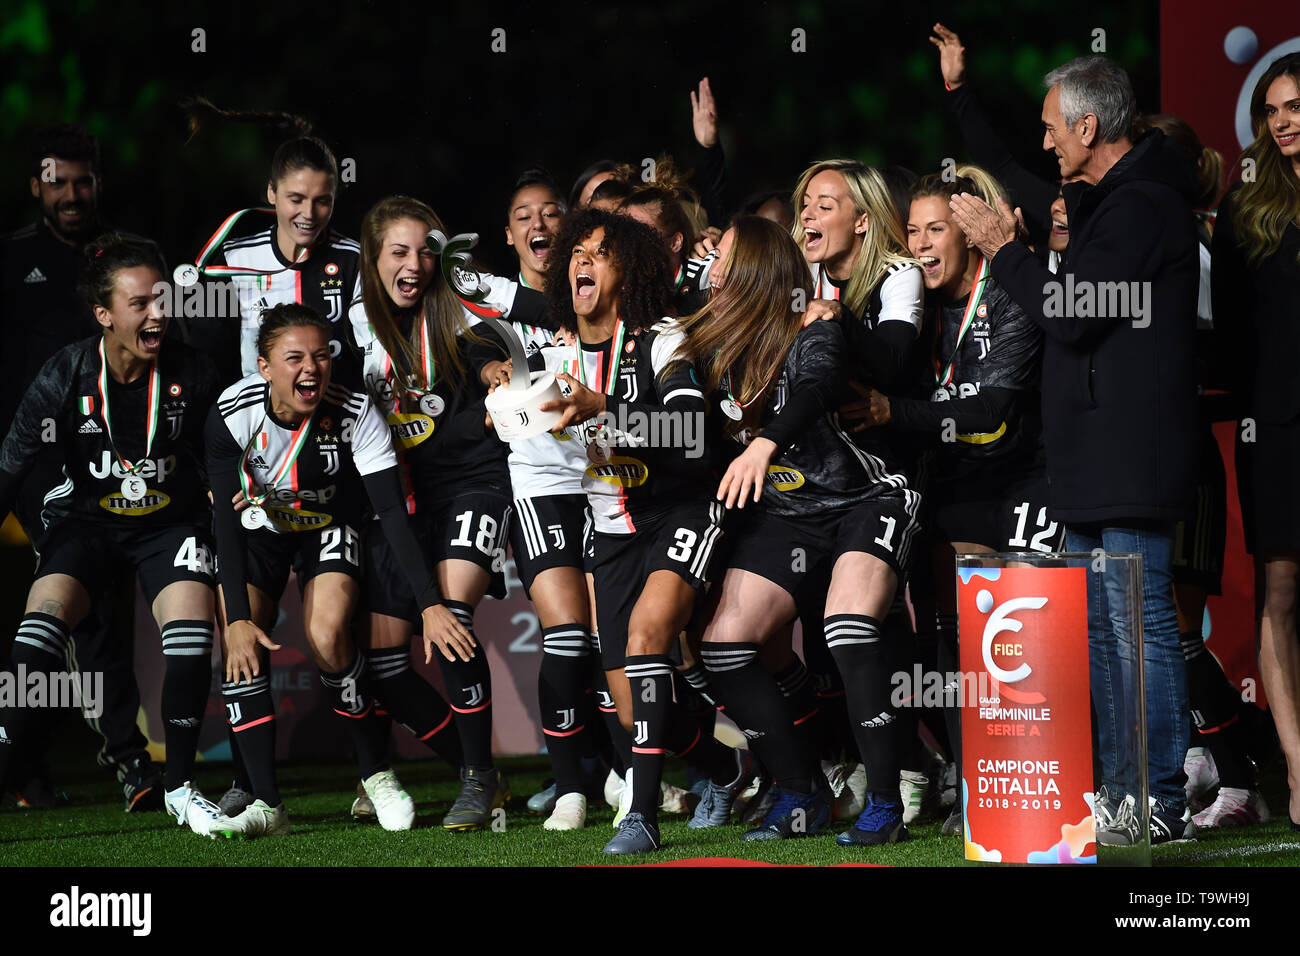 La gioia finale di gruppo con il trofeo (Juventus donne) durante l'italiano 'Serie A' match tra Juventus 1-1 Atalanta presso lo stadio Allianz il 19 maggio 2019 a Torino, Italia. (Foto di Maurizio Borsari/AFLO) Foto Stock